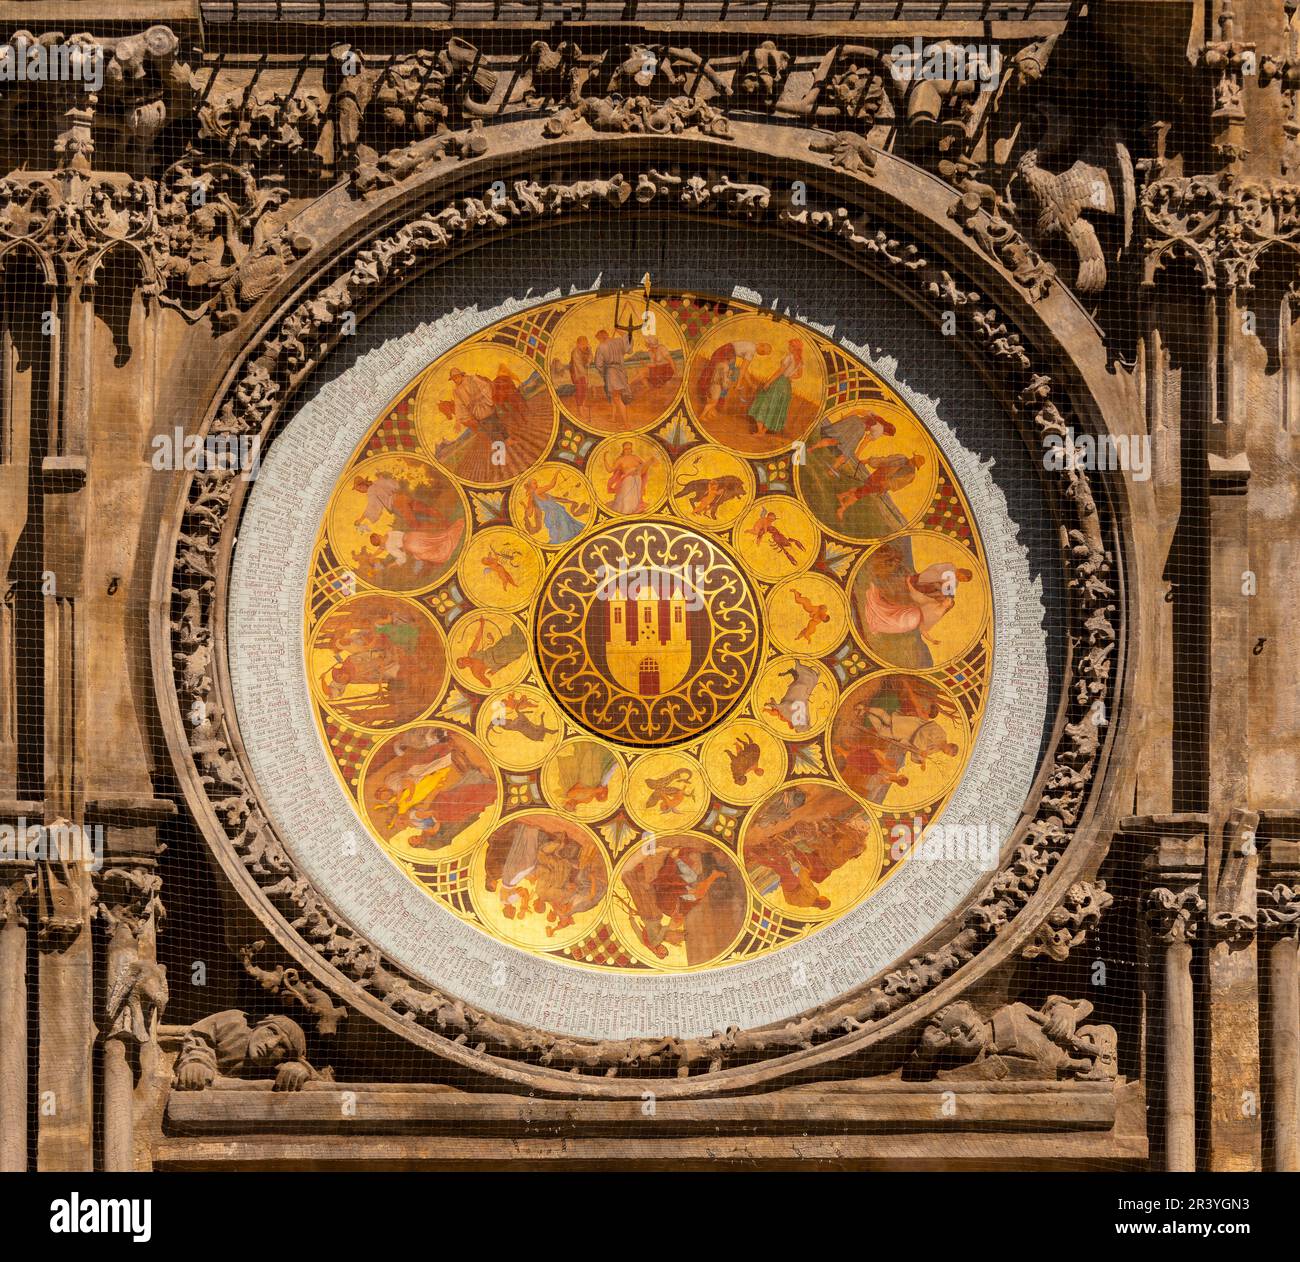 PRAG, TSCHECHISCHE REPUBLIK - Kalenderscheibe, Teil der astronomischen Uhr am Alten Rathaus. Horologe. Prag Orloj. Stockfoto